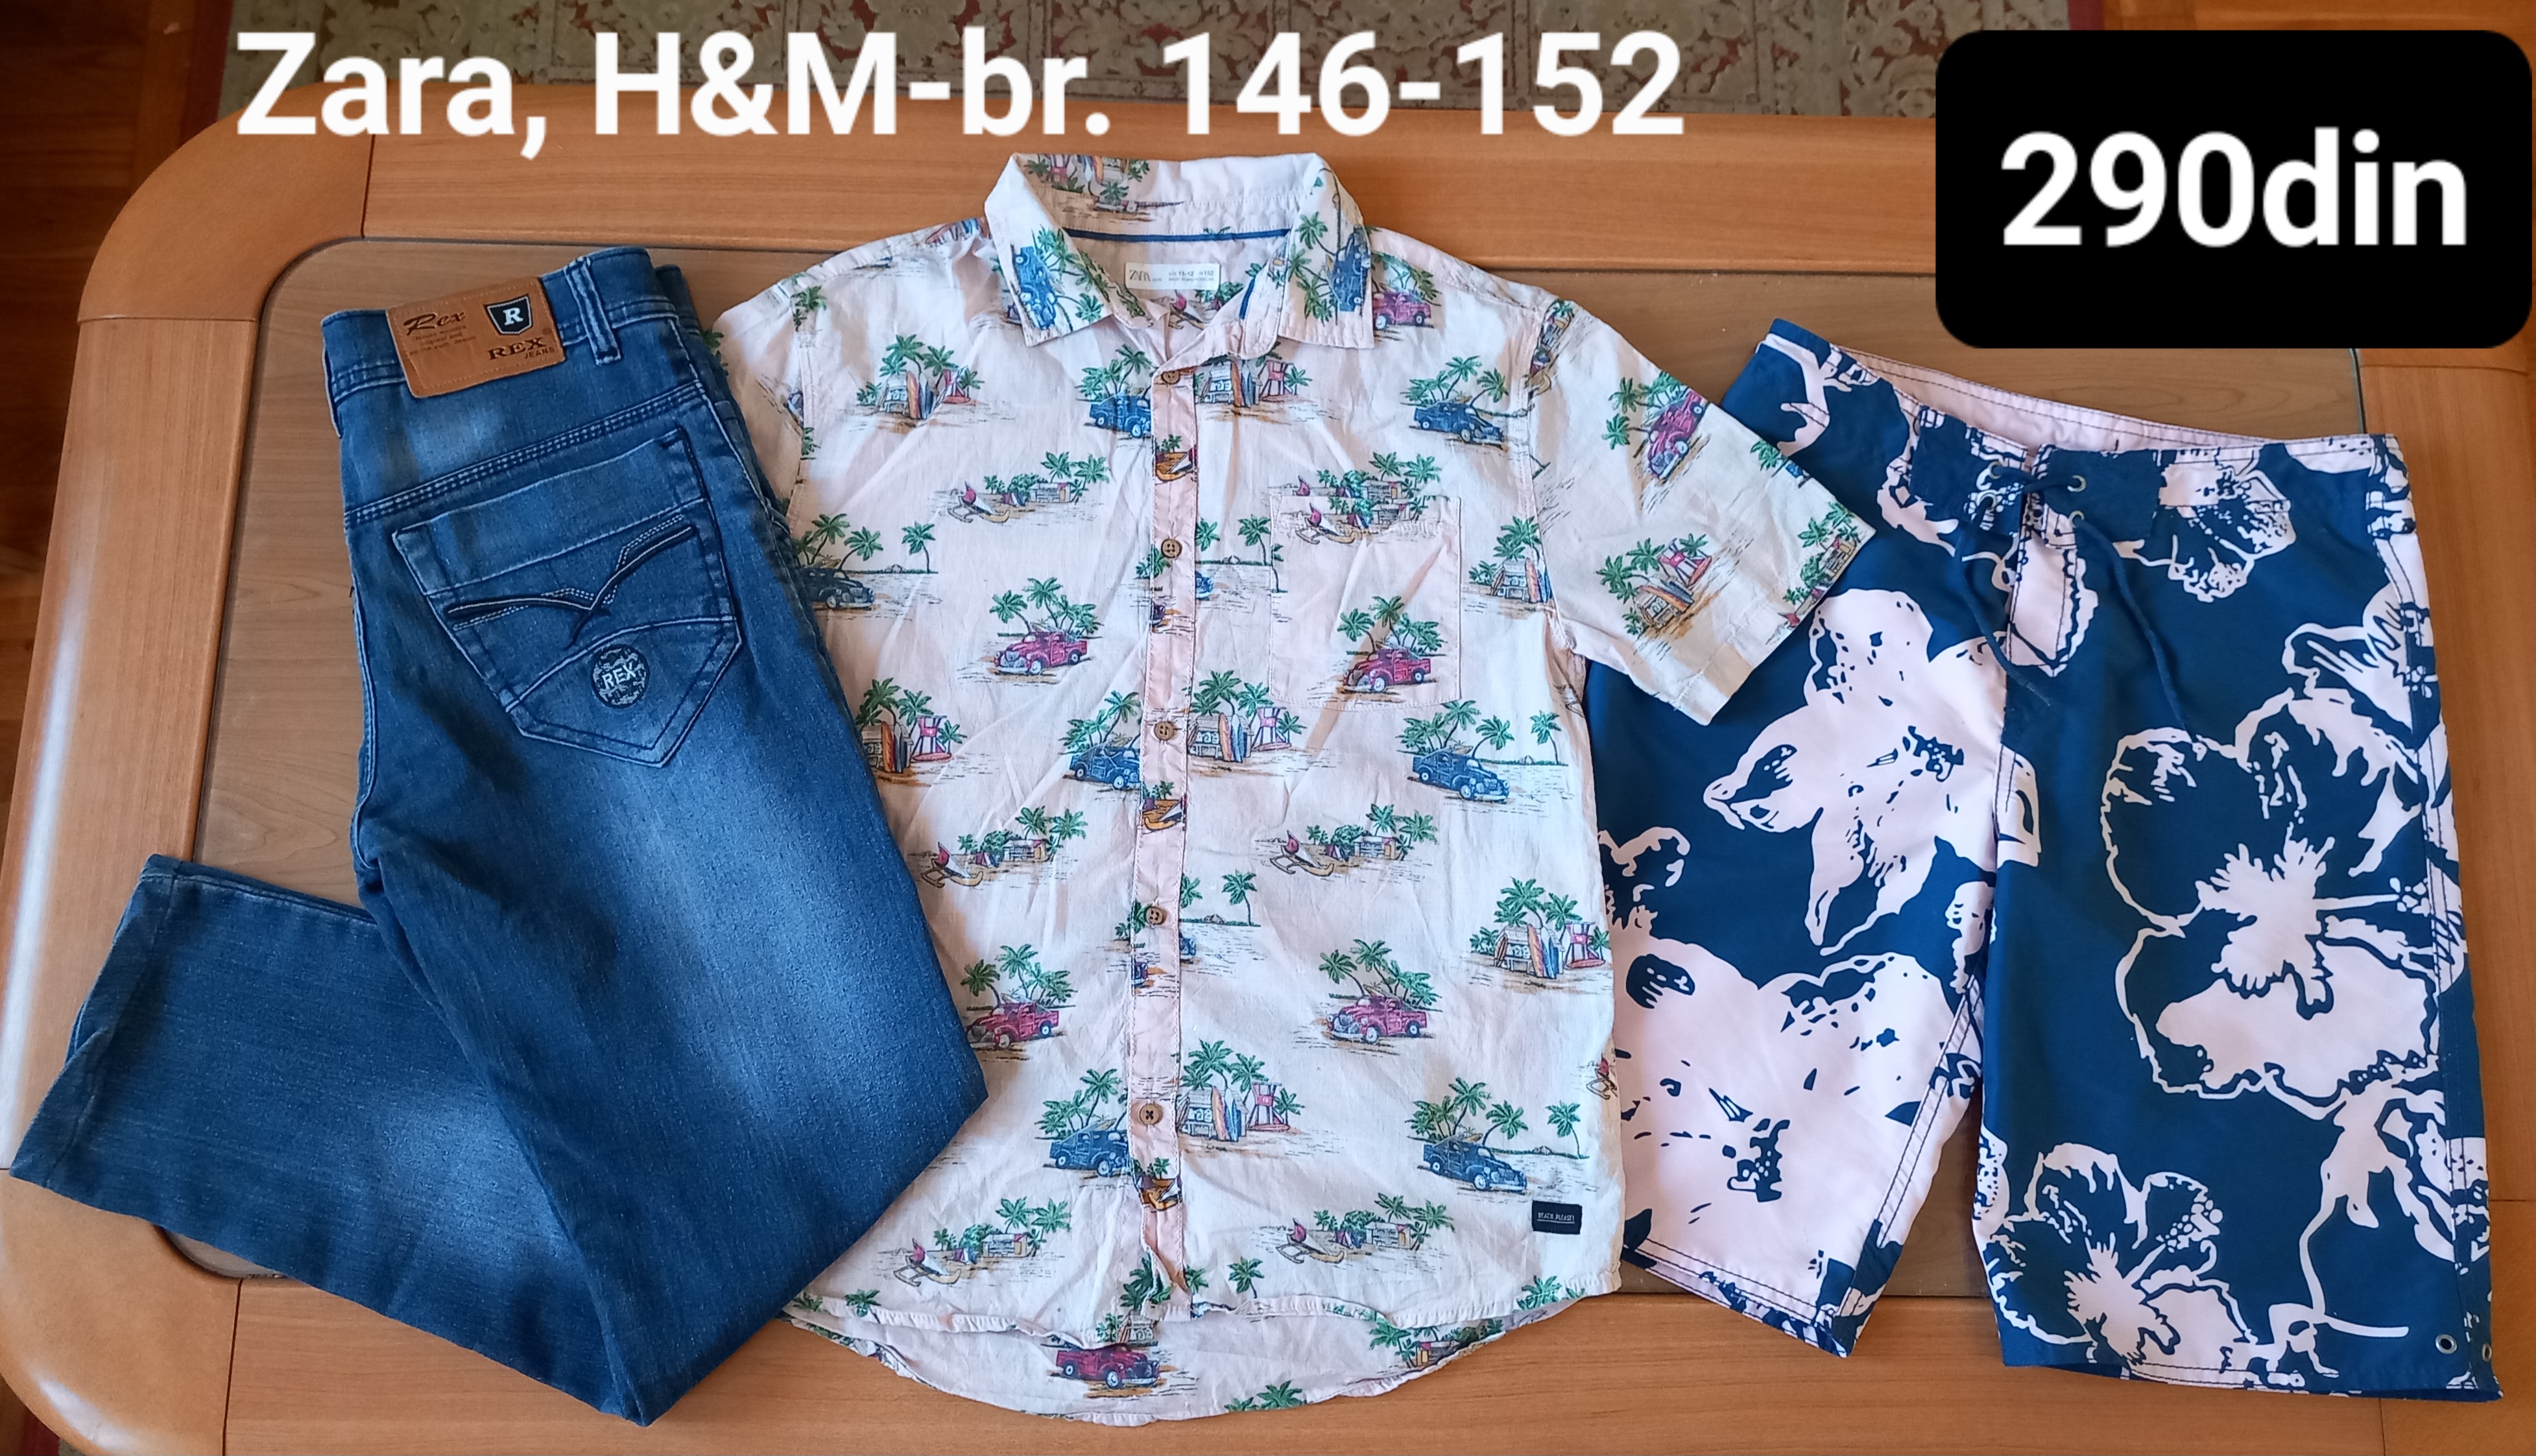 Zara H&M košulja šorts farmerke br. 146-152